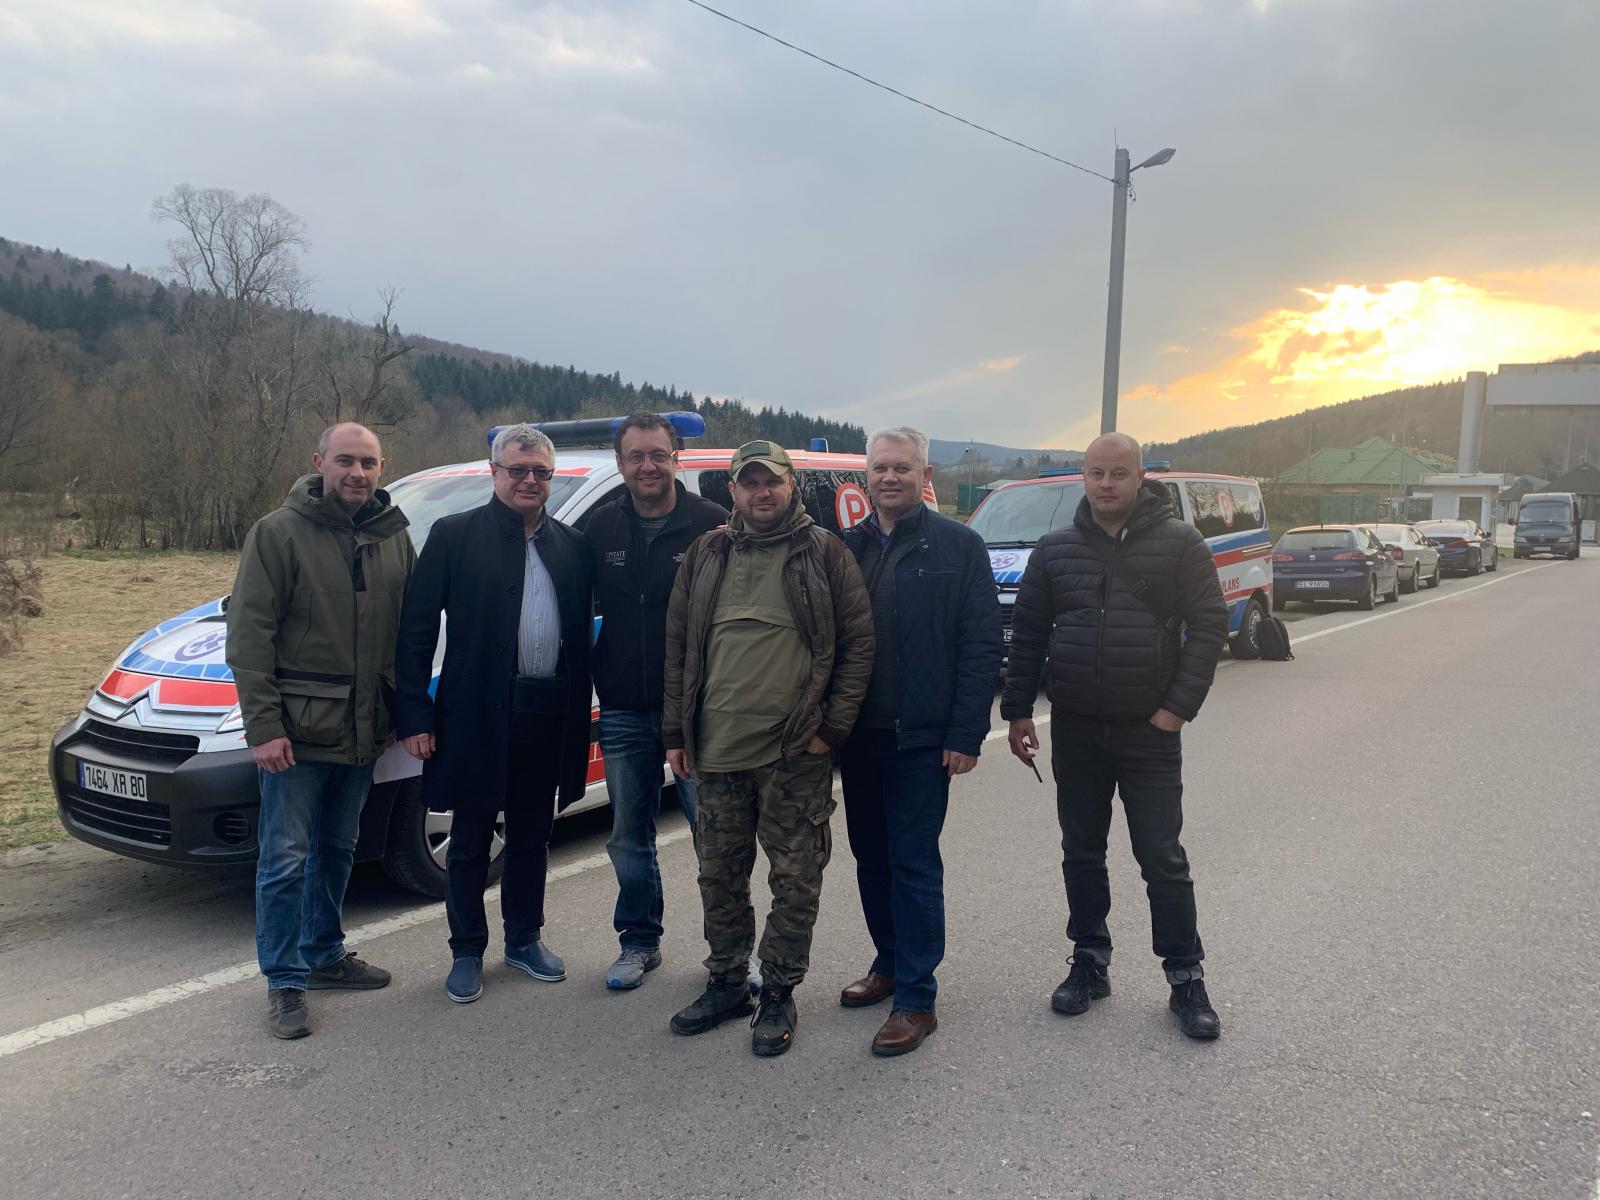 Group photo including Dr. Bratslavsky and the ambulances delivered to Lviv.